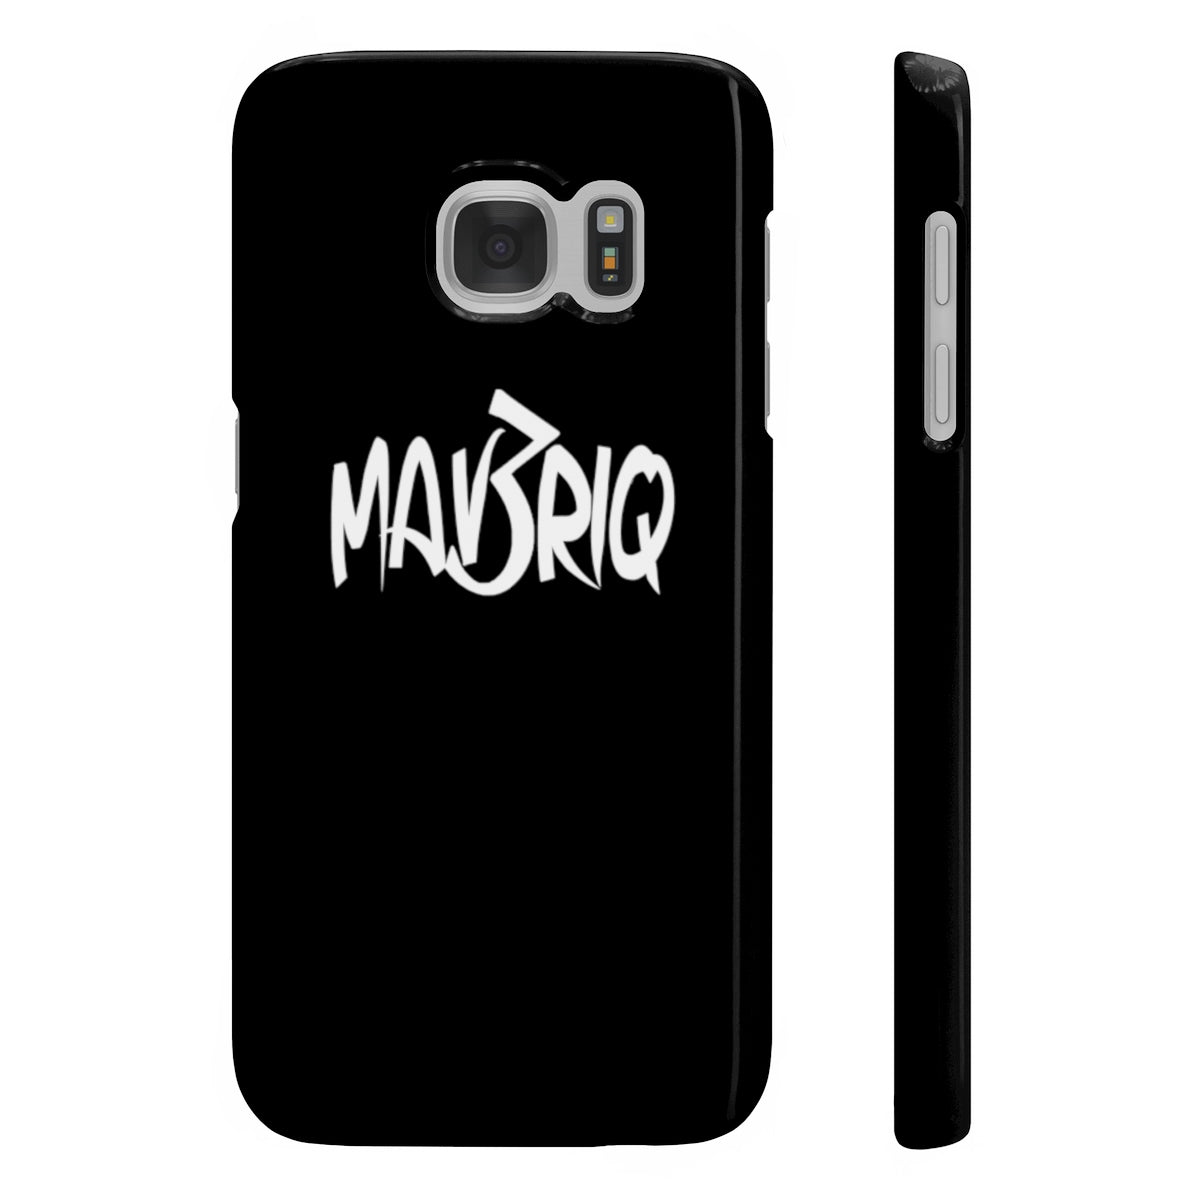 Black MAV3RIQ Phone Case